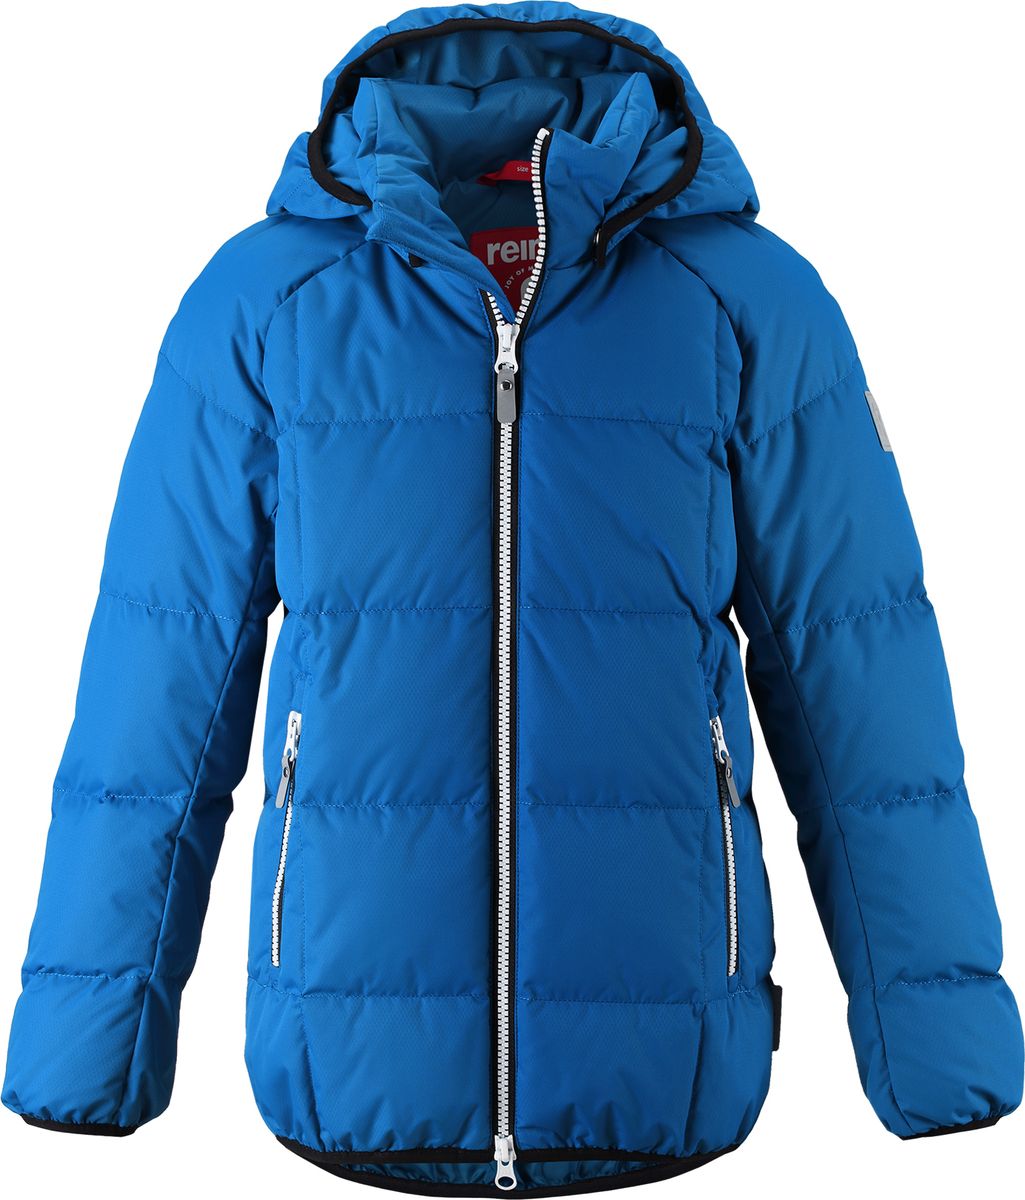 Куртка для мальчика Reima Jord, цвет: синий. 5313596680. Размер 122